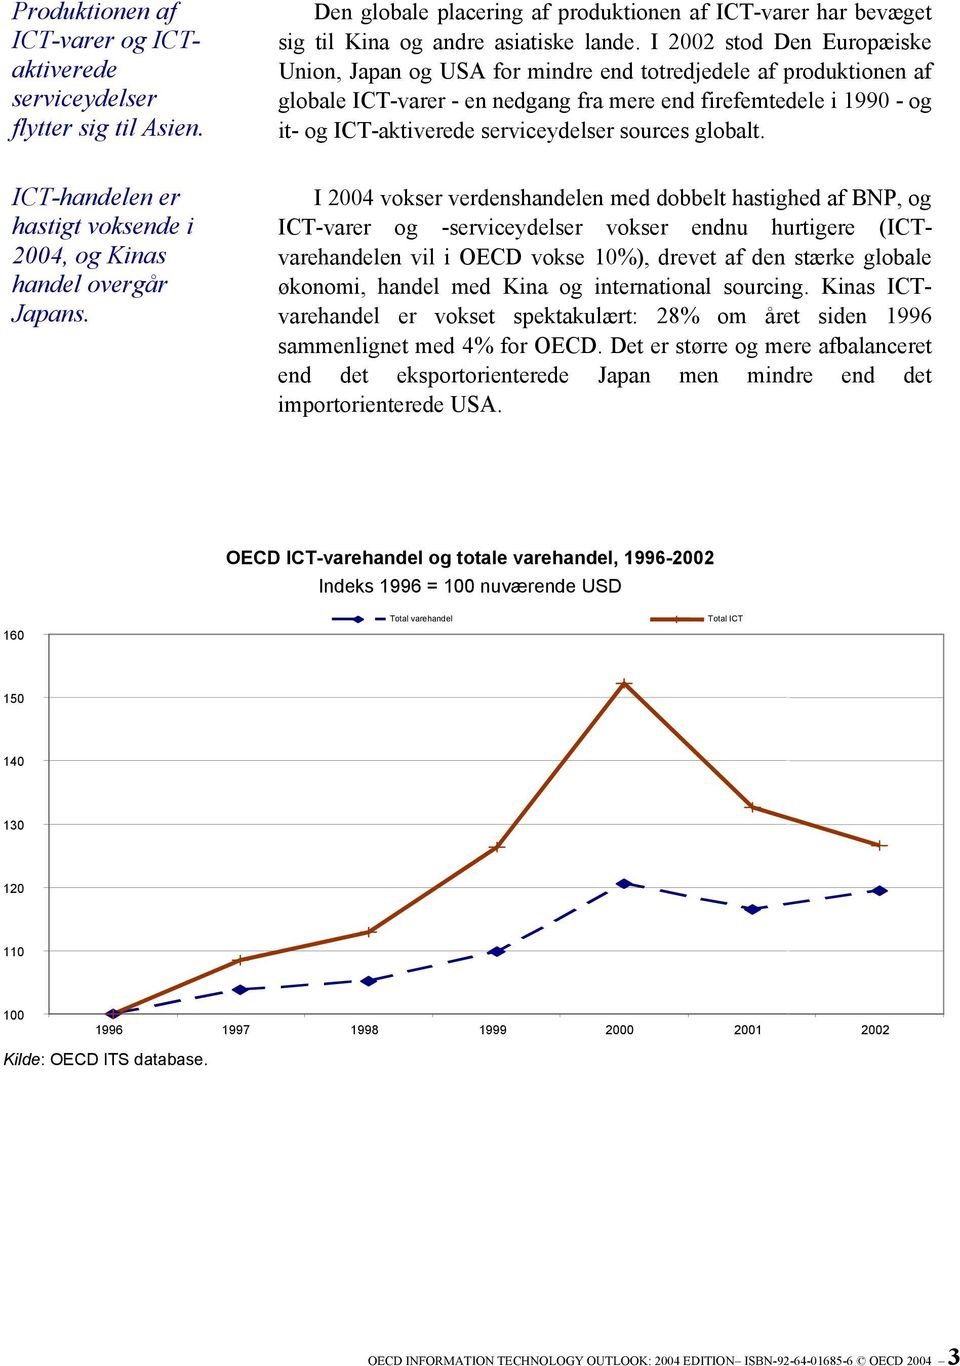 serviceydelser sources globalt. ICT-handelen er hastigt voksende i 2004, og Kinas handel overgår Japans.